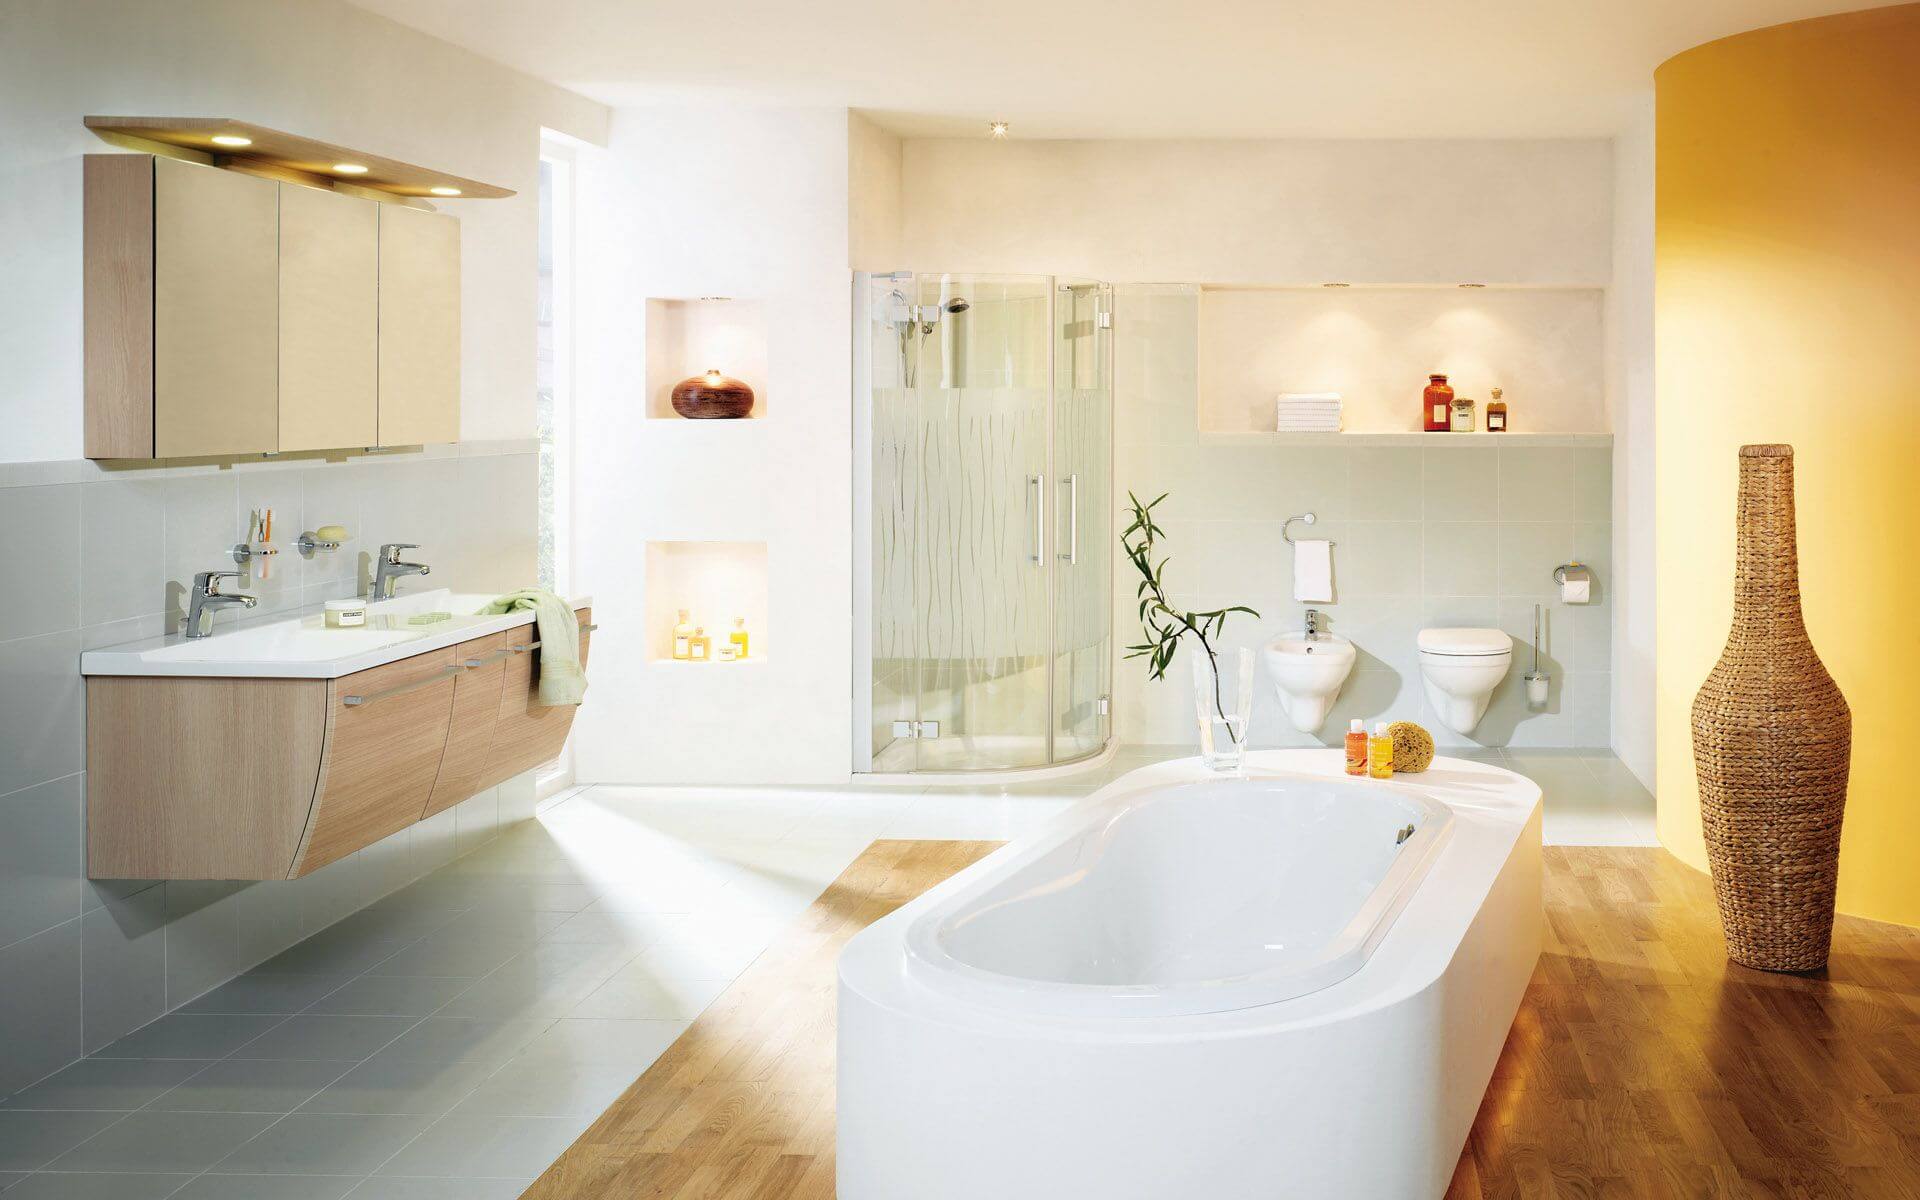 100 больших идей для маленькой ванной на фото - дизайн интерьера